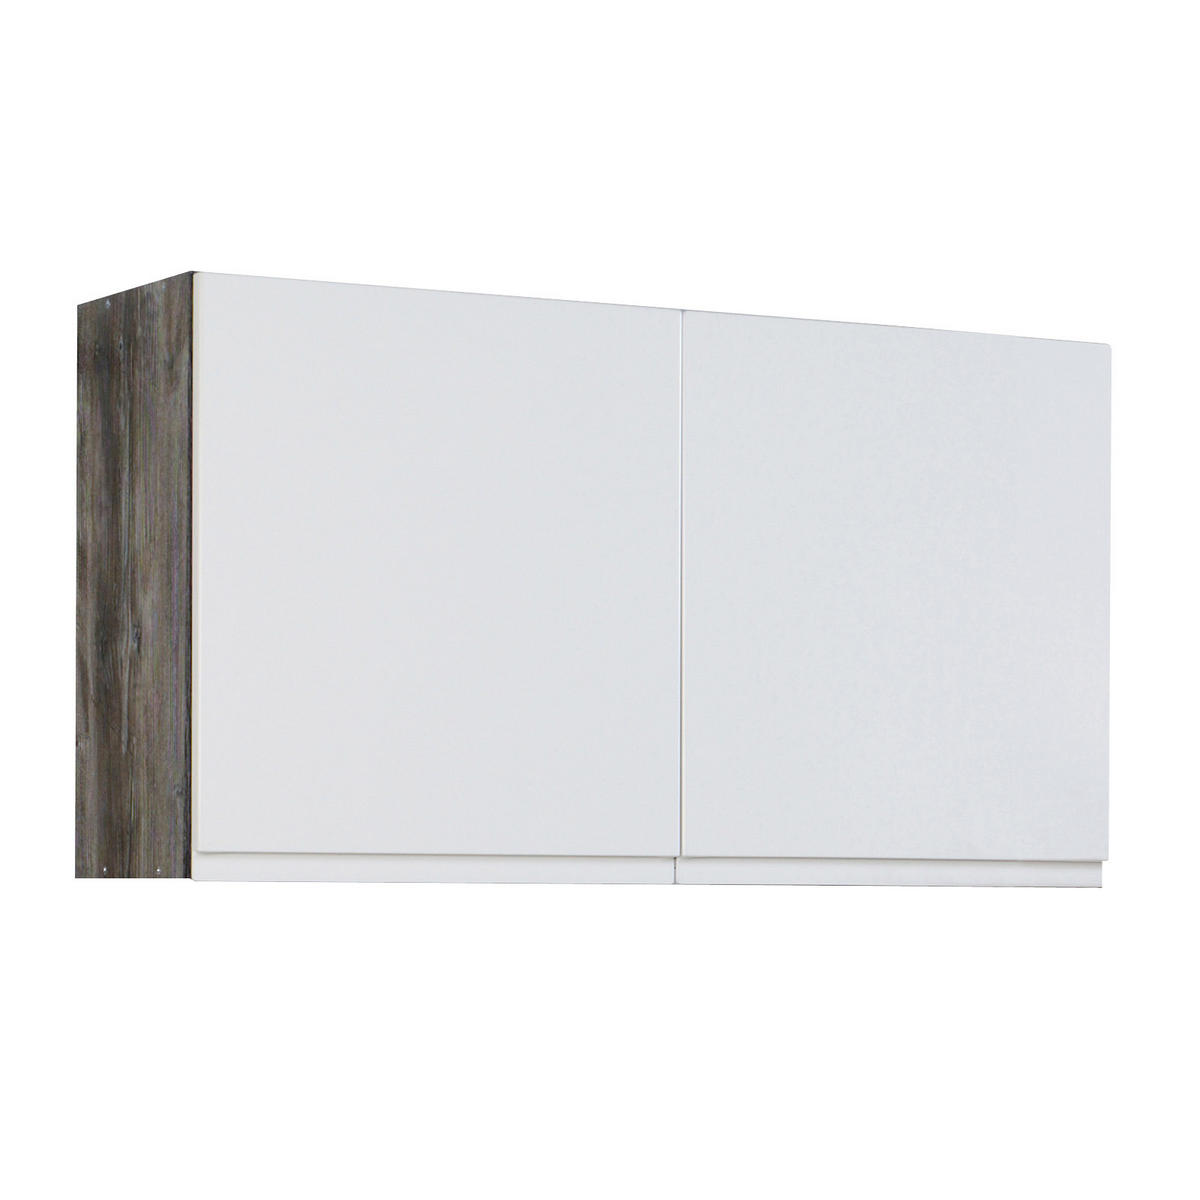 Küchenleerblock 270 cm breit in Weiß finden online